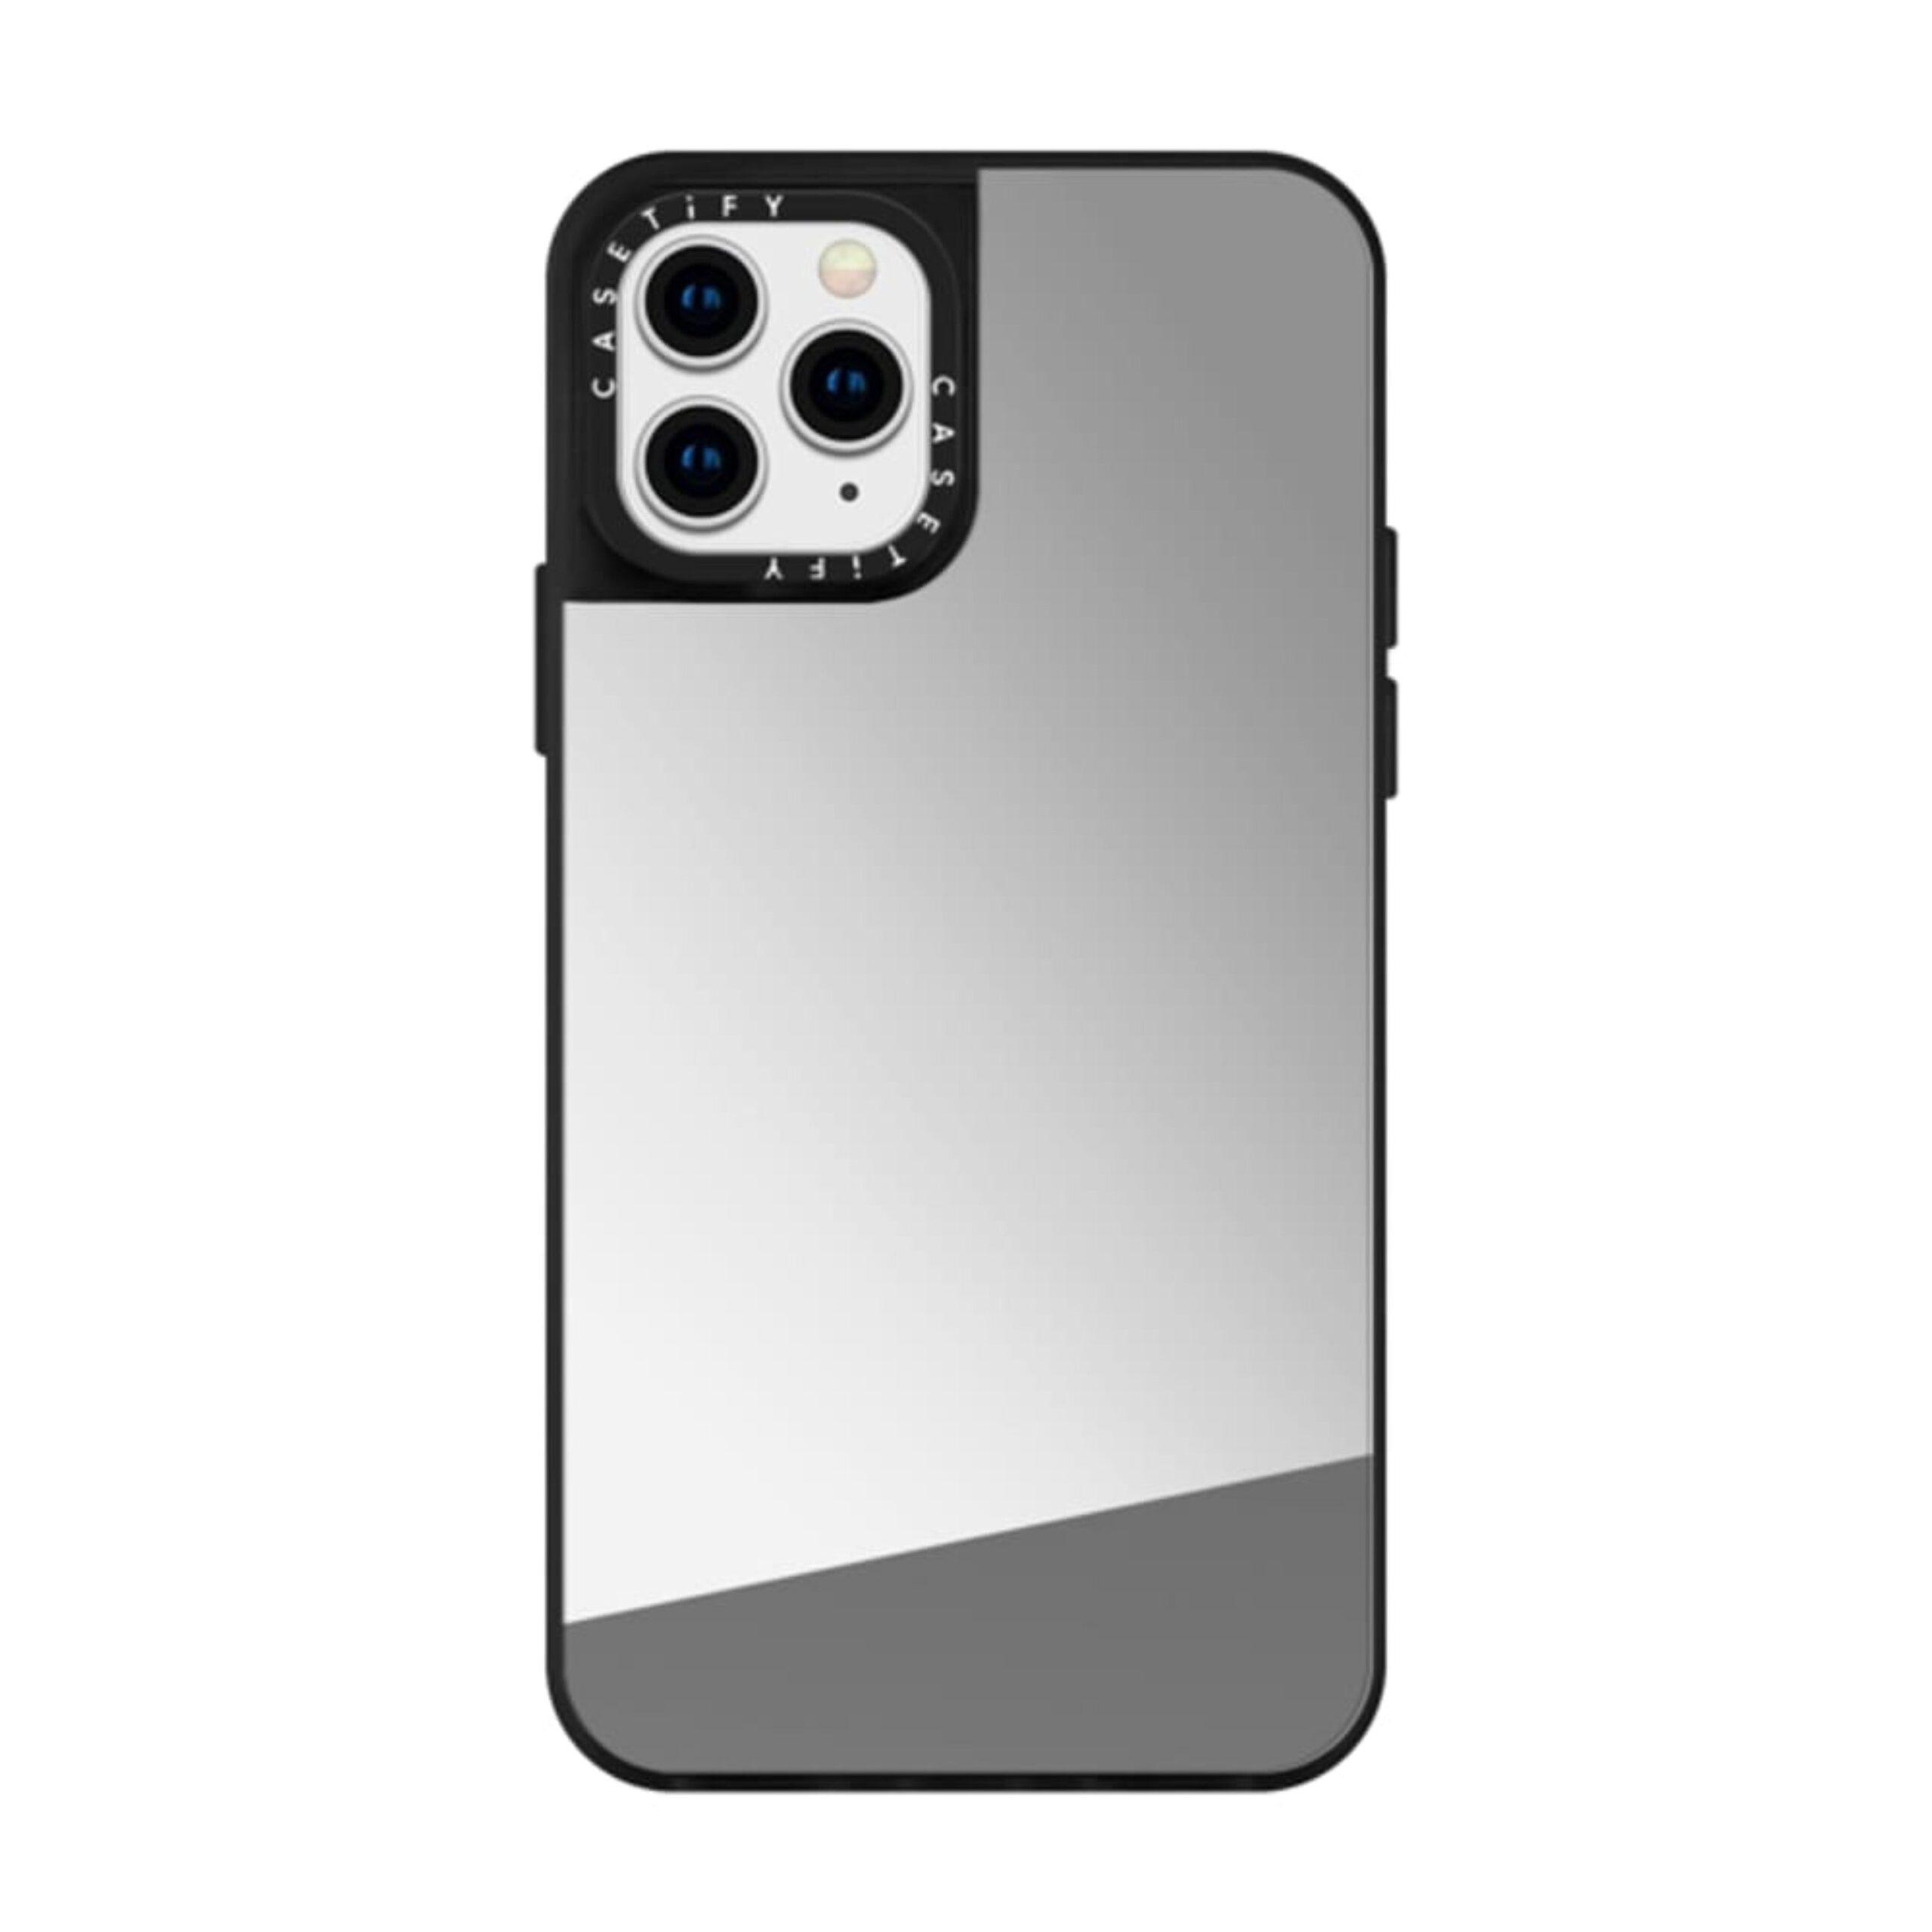 كفر آيفون بخلفية مرآة يدعم MagSafe و الشحن اللاسلكي  Casetify MIRROR Apple iPhone 12 Pro Max Case